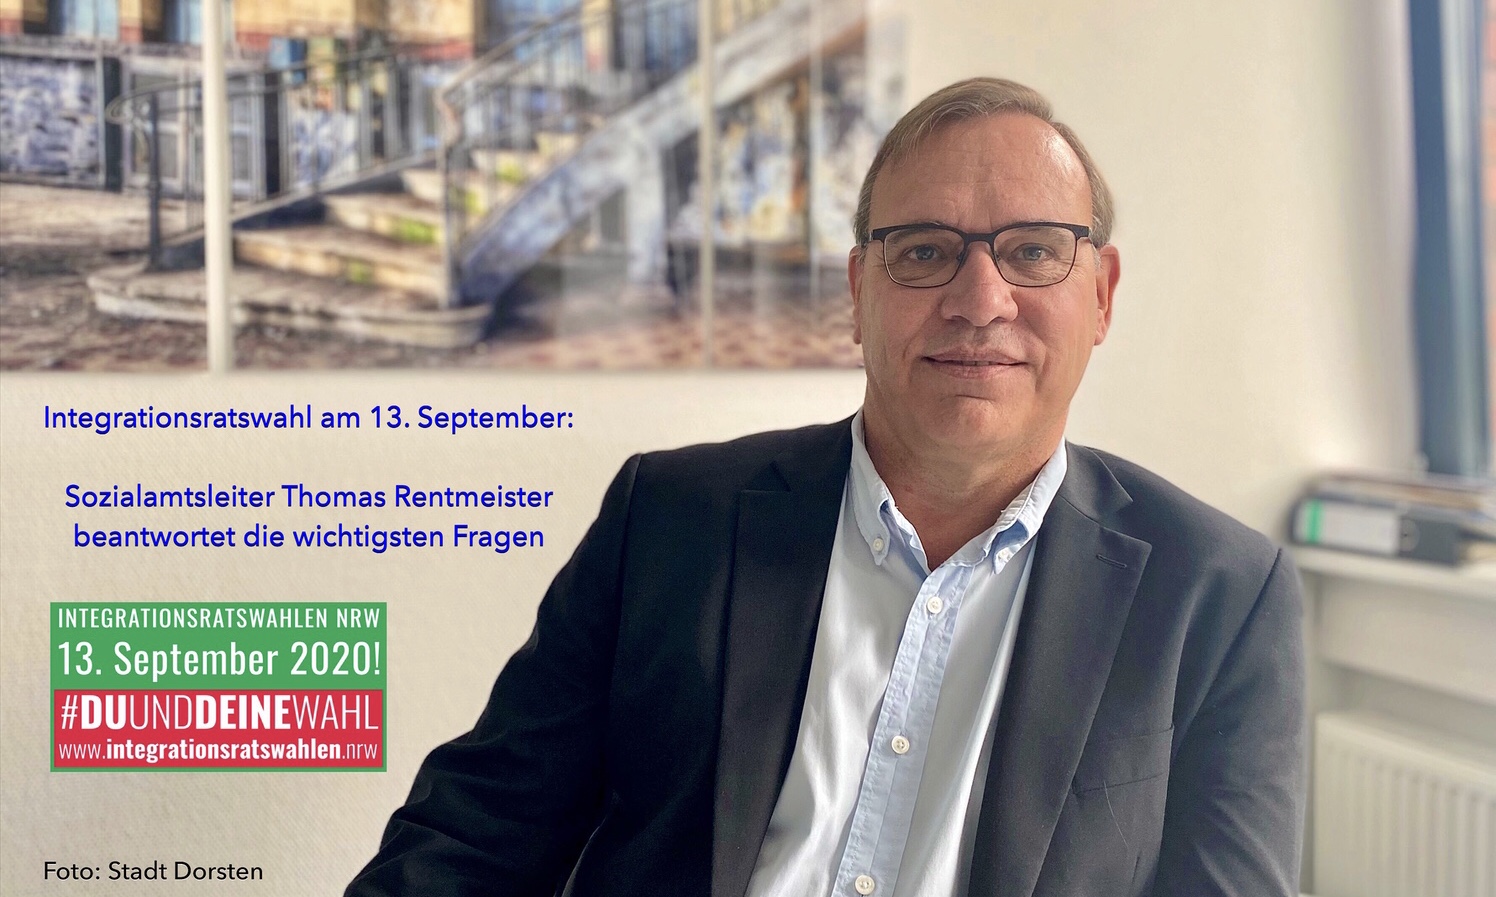 Integrationsratswahl am 13. September: Sozialamtsleiter Thomas Rentmeister beantwortet die wichtigsten Fragen